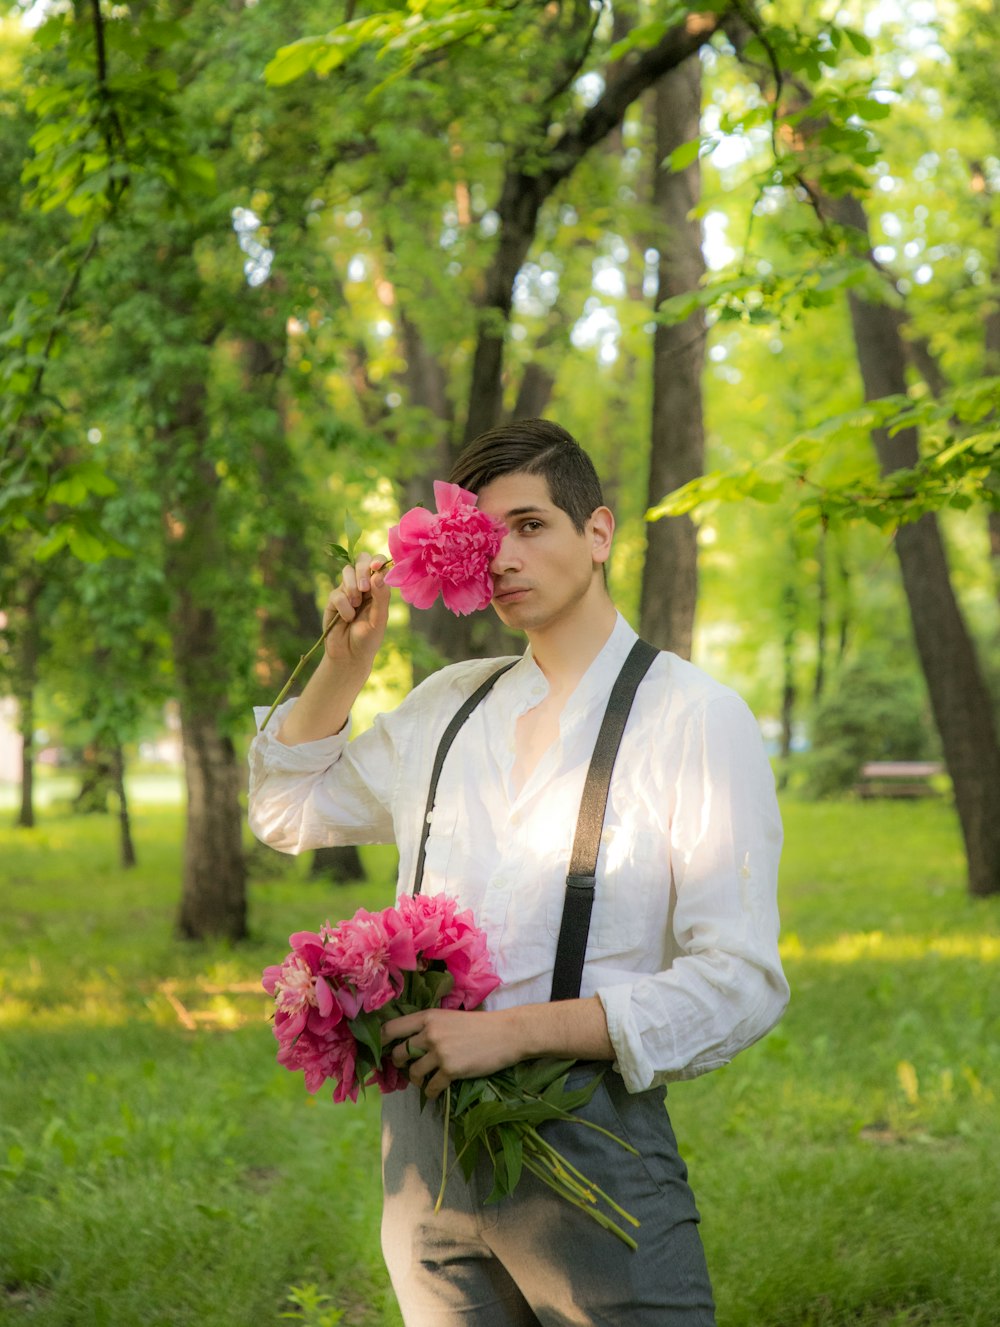 Mann im weißen Hemd mit rosa Blumenstrauß